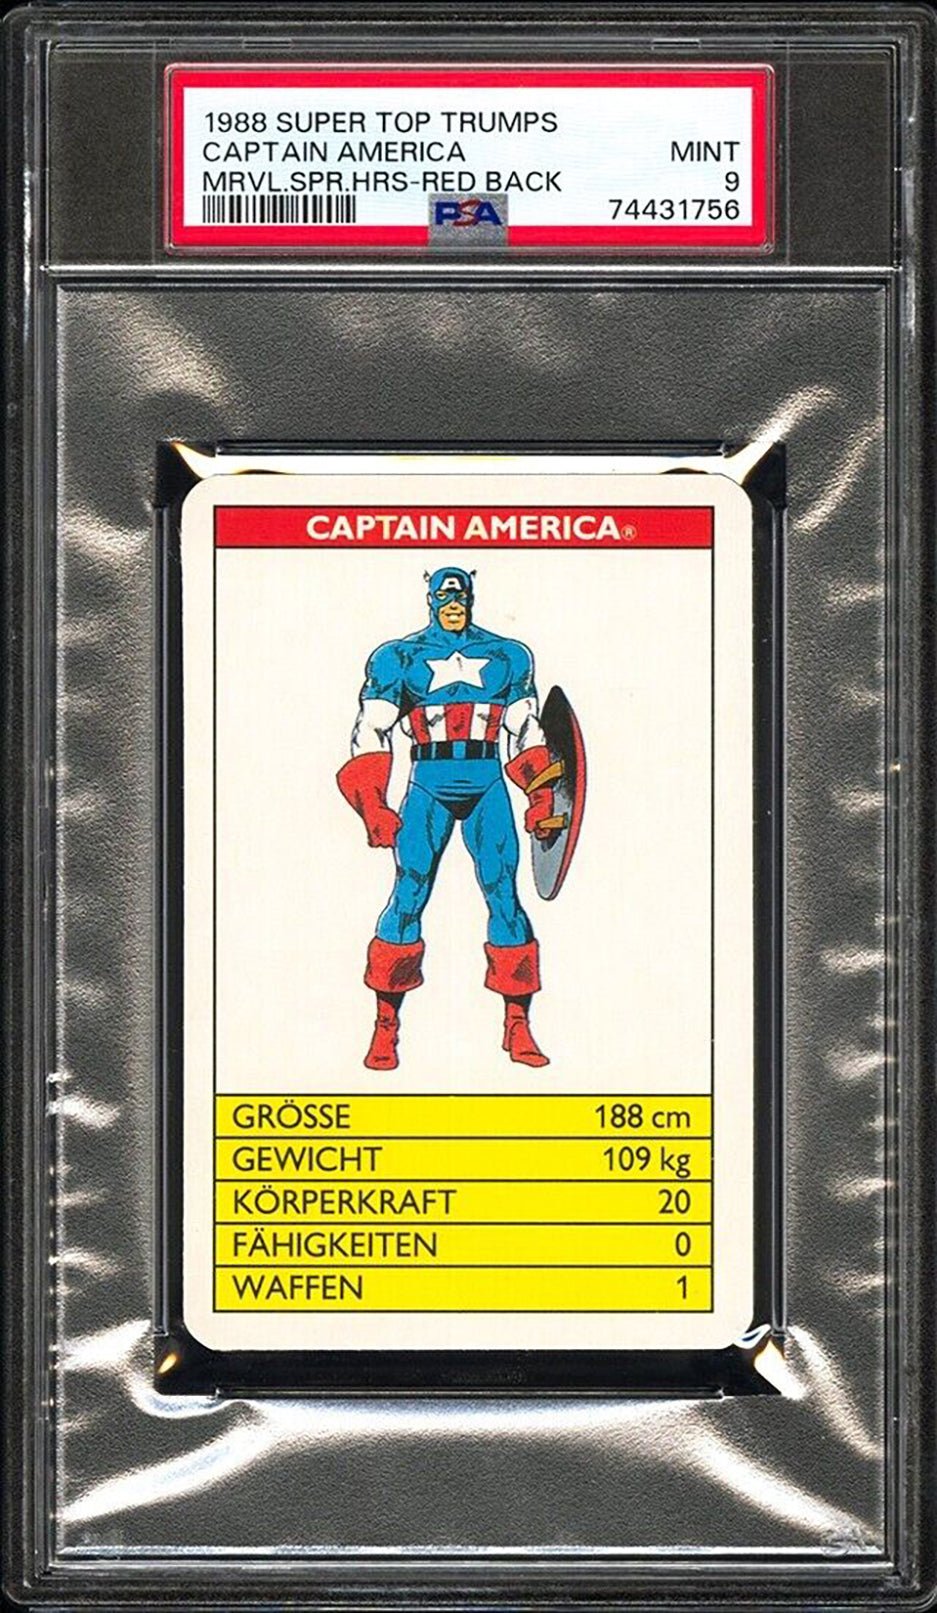 CAPTAIN AMERICA PSA 9 1988 Super Top Trumps Marvel Super Heroes Red Back C1 Marvel Base Graded Cards - Hobby Gems